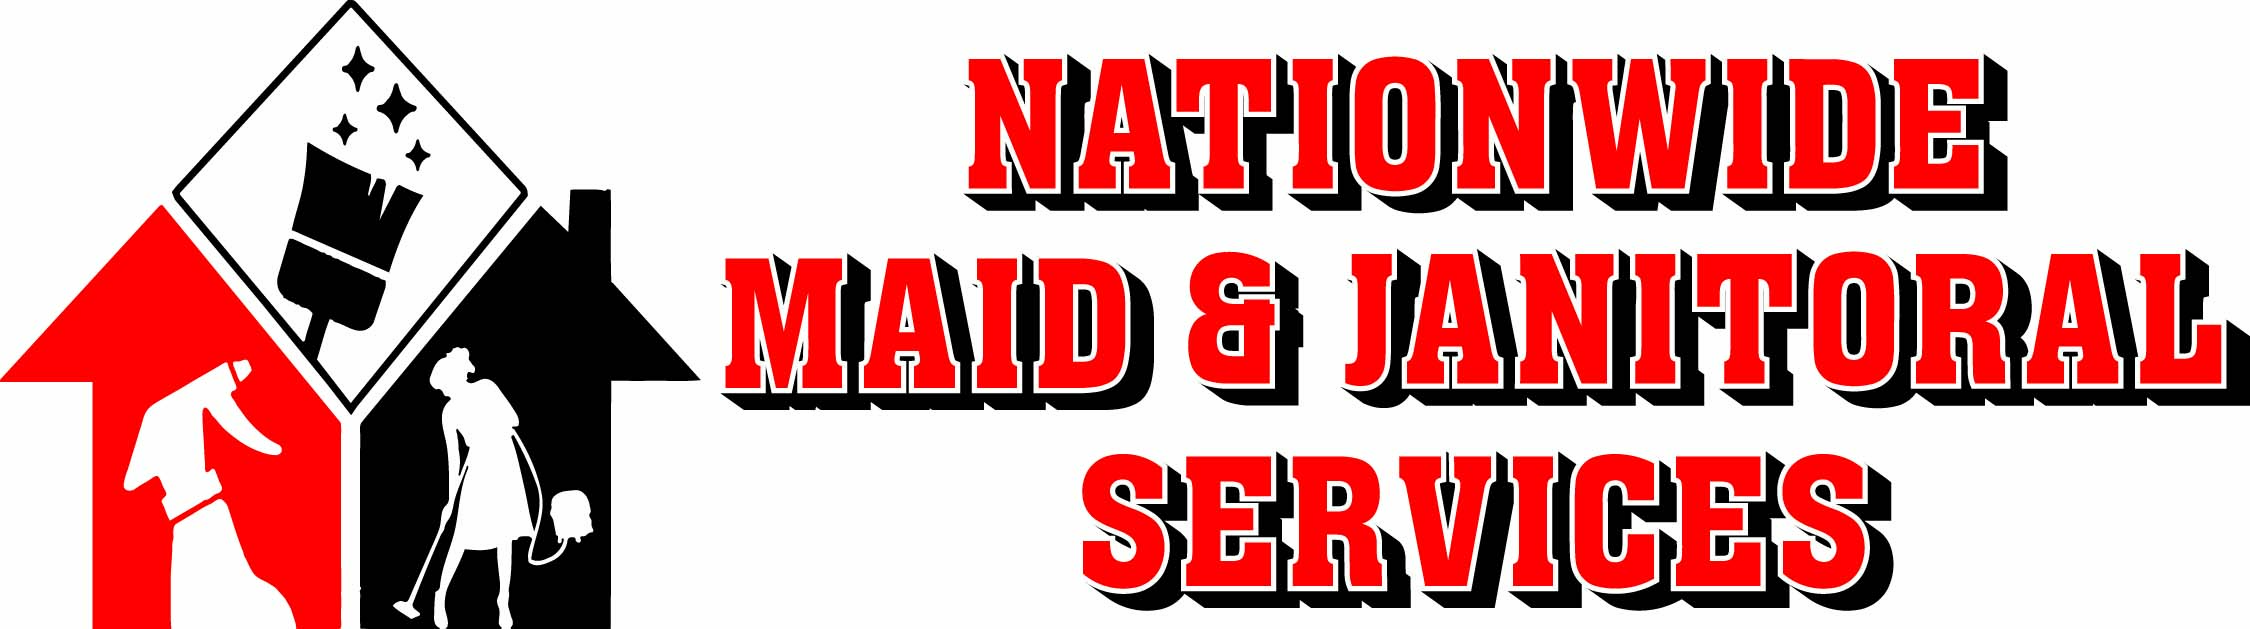 Nationwidw Janitoral logo copy